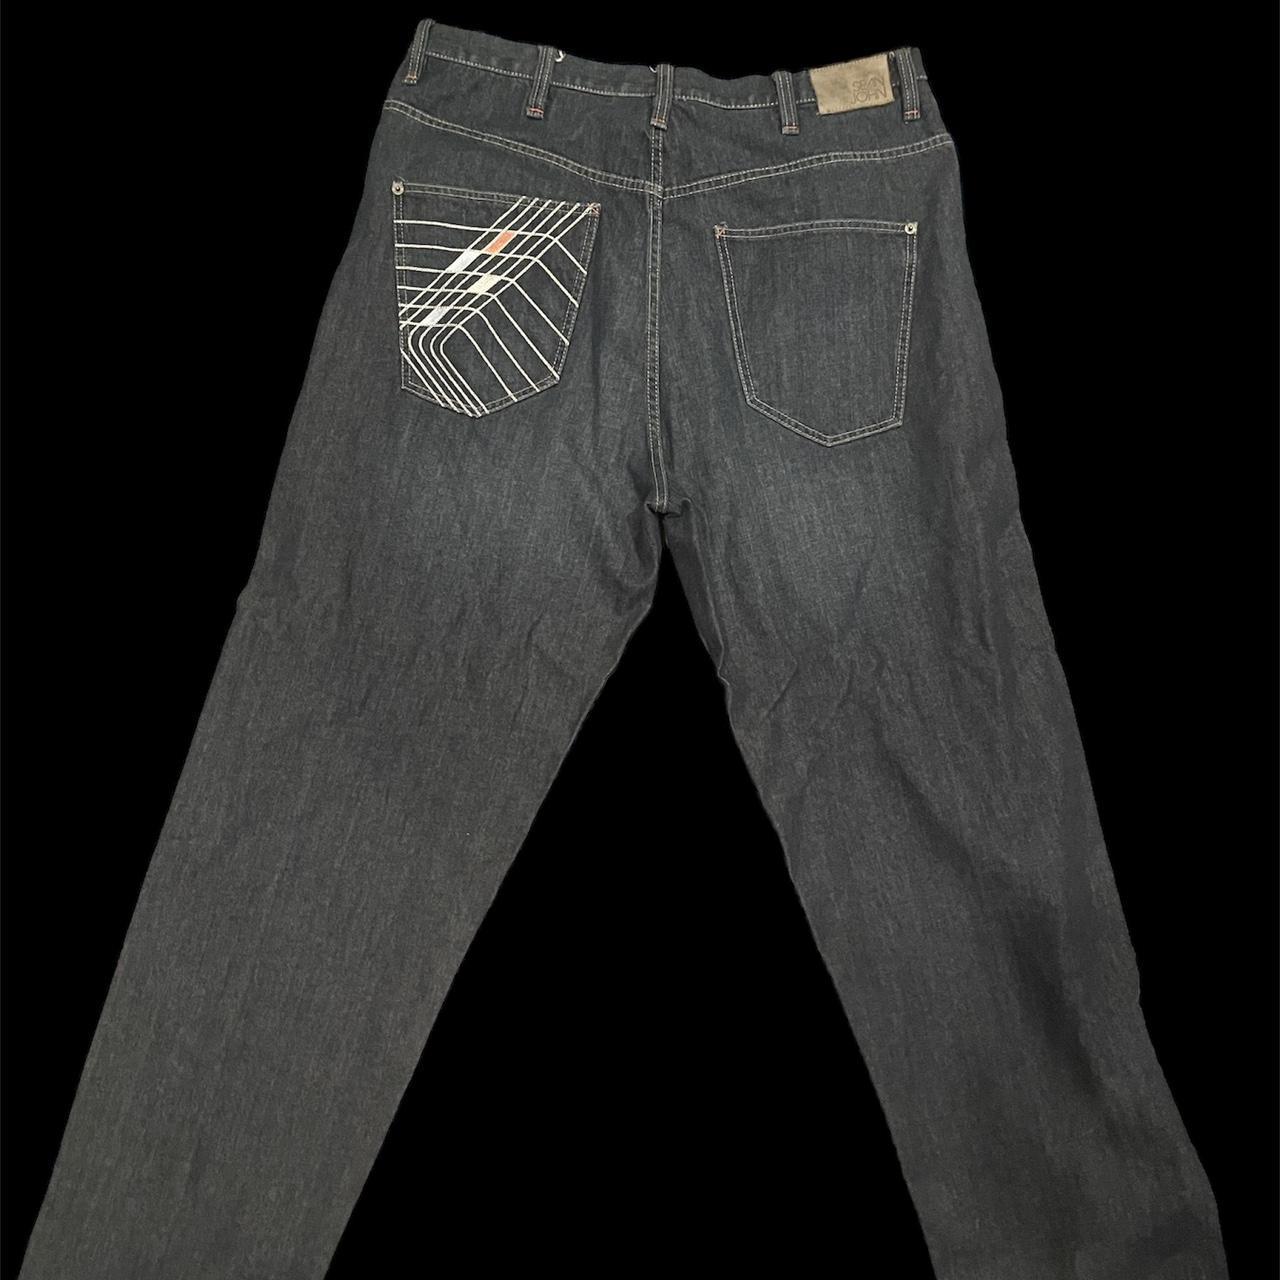 sean john vintage jeans - Depop